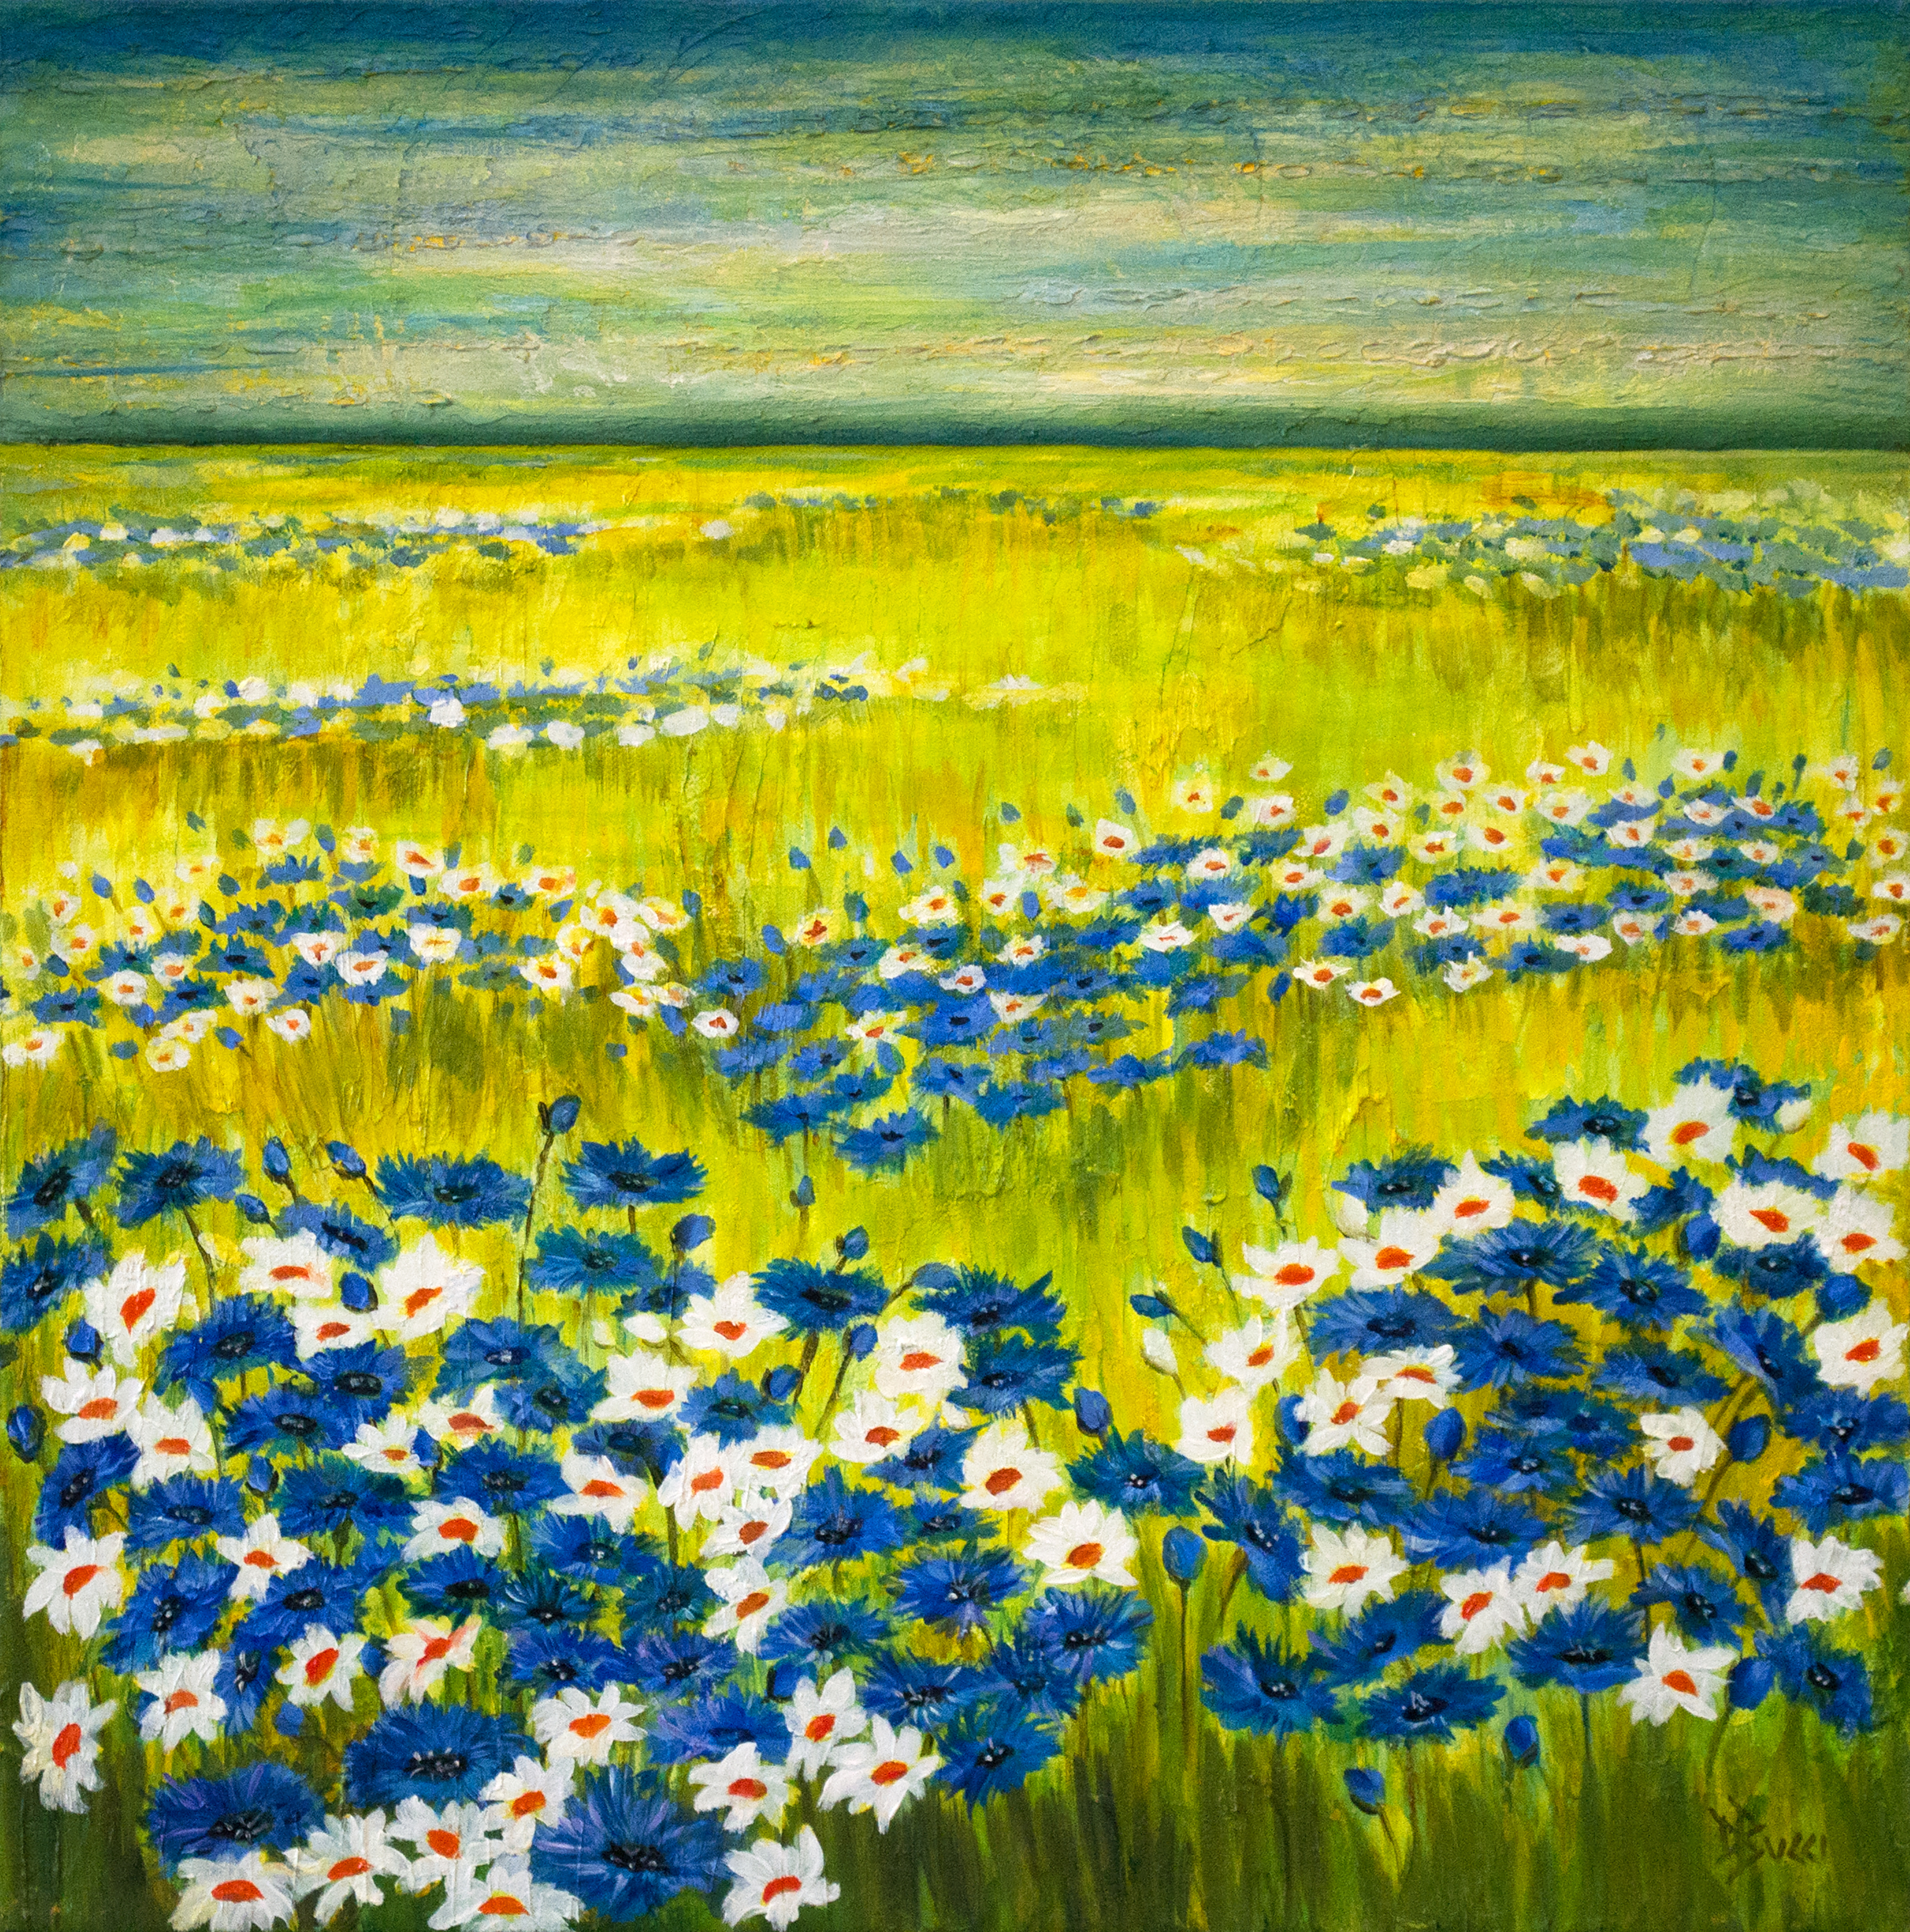 Wildflowers - Art in Bloom Gallery - Art in Bloom Gallery